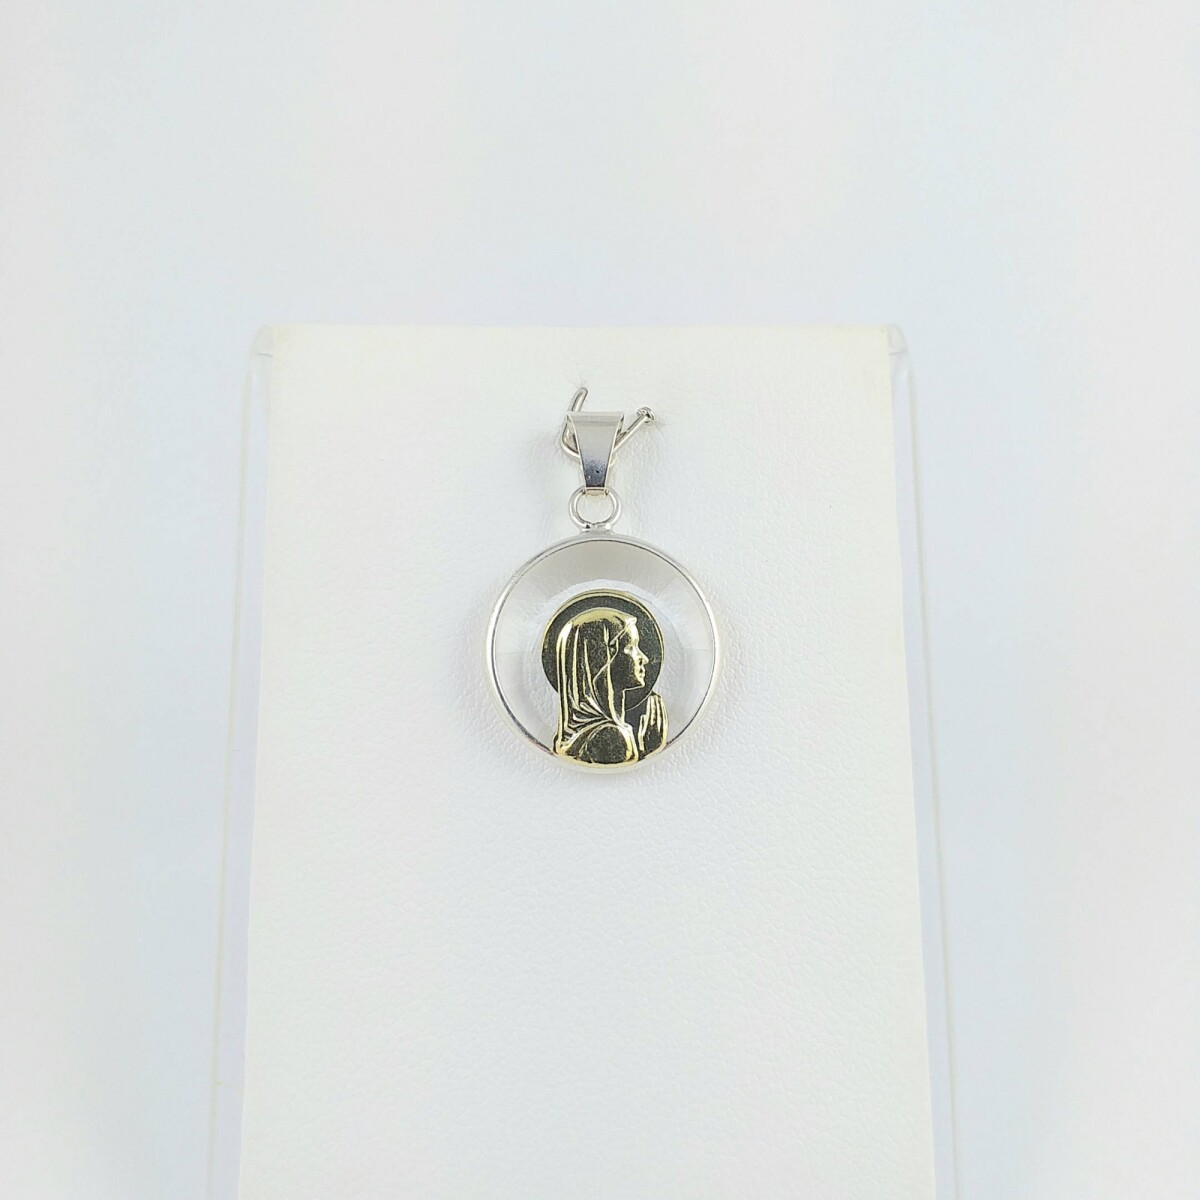 Medalla religiosa de plata 925 Virgen Niña cristal con manto, detalles de double en oro 18Ktes, diámetro 17mm. 